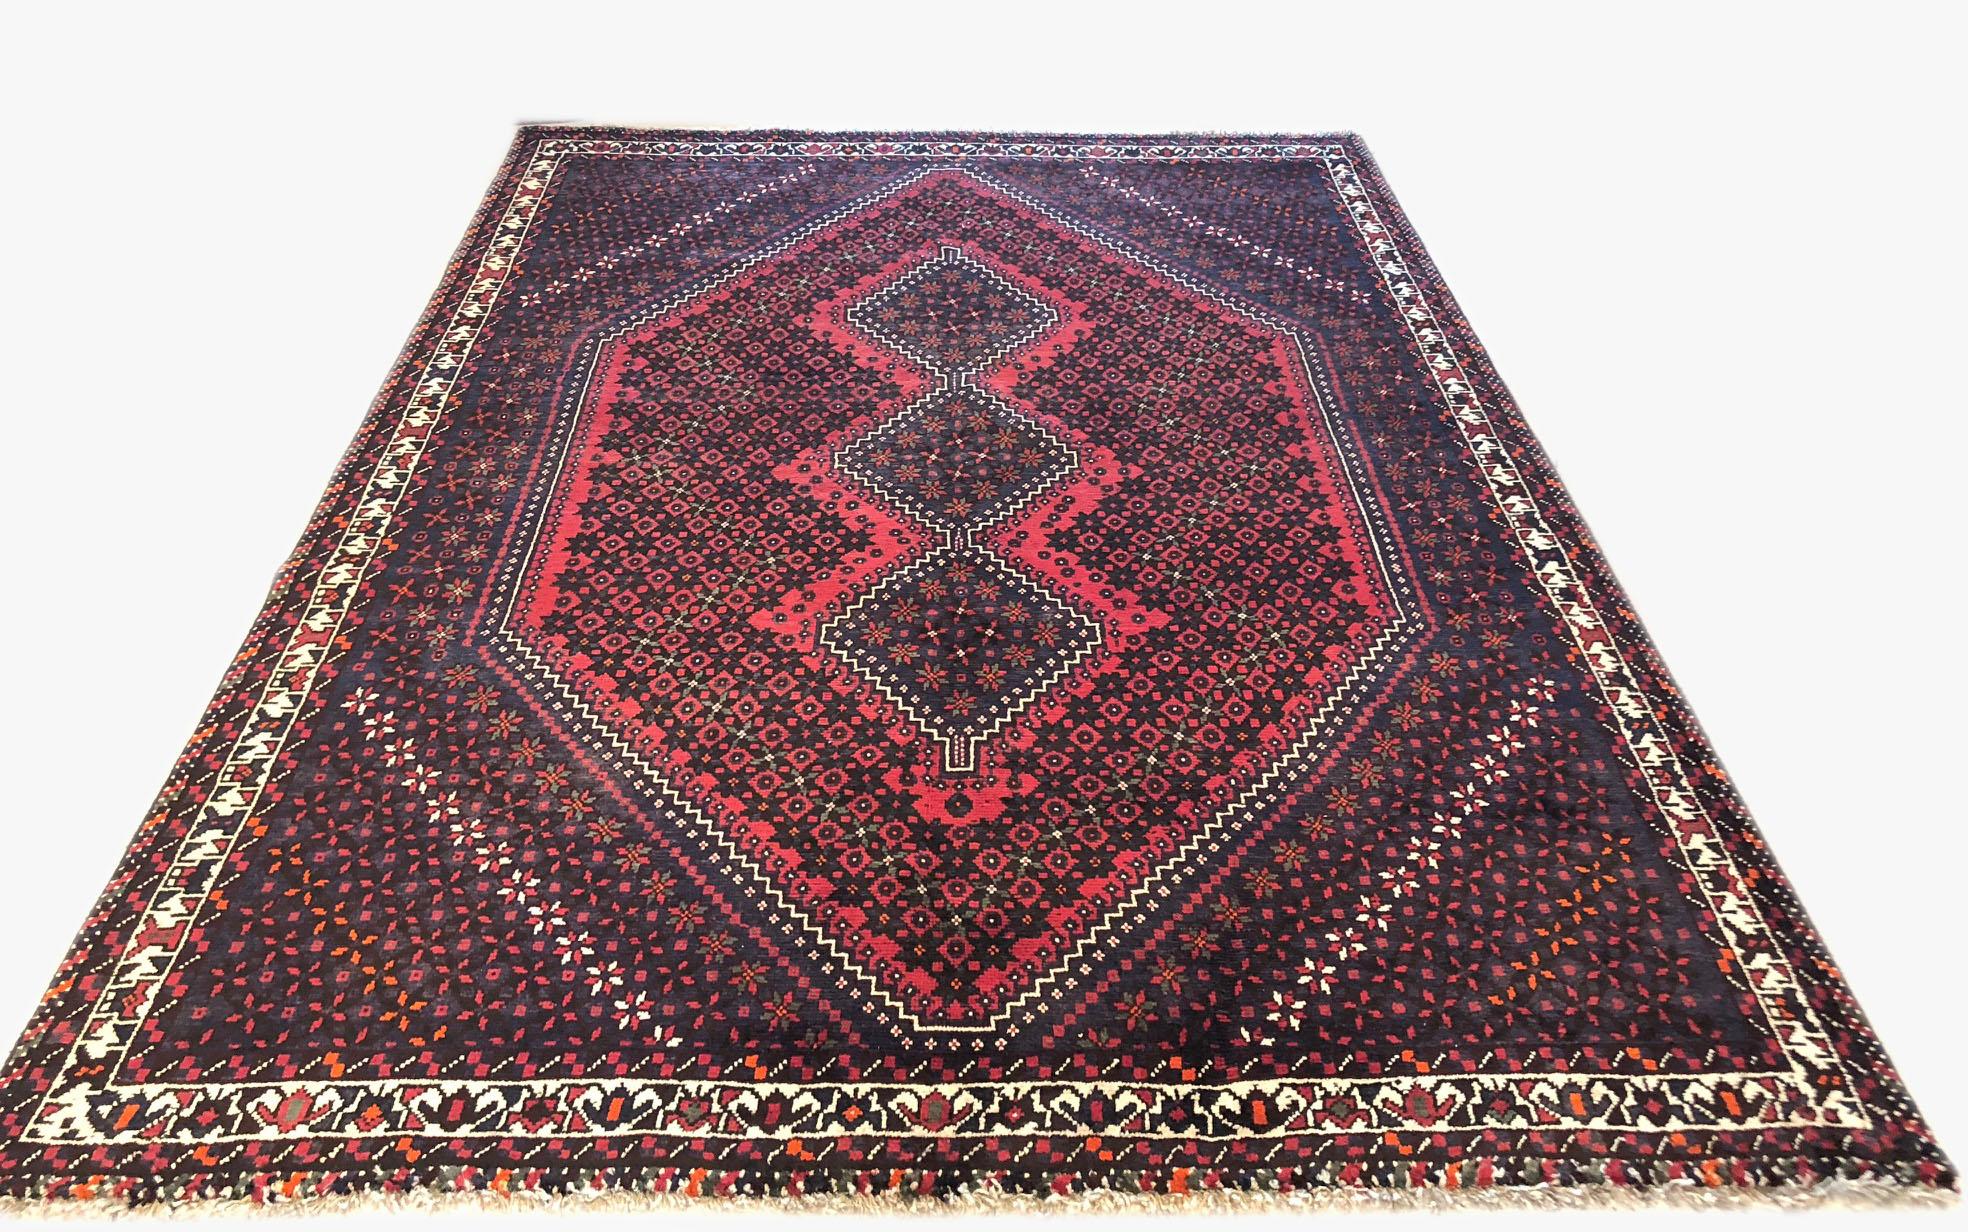 Dieser Teppich ist ein authentischer Teppich aus dem Iran, Shiraz. Der Flor und die Unterlage bestehen aus Wolle. Die Grundfarbe ist rot und dunkelbraun. Das Design ist geometrisch mit einem sich wiederholenden Rautenmedaillon. Dieses Stück eignet